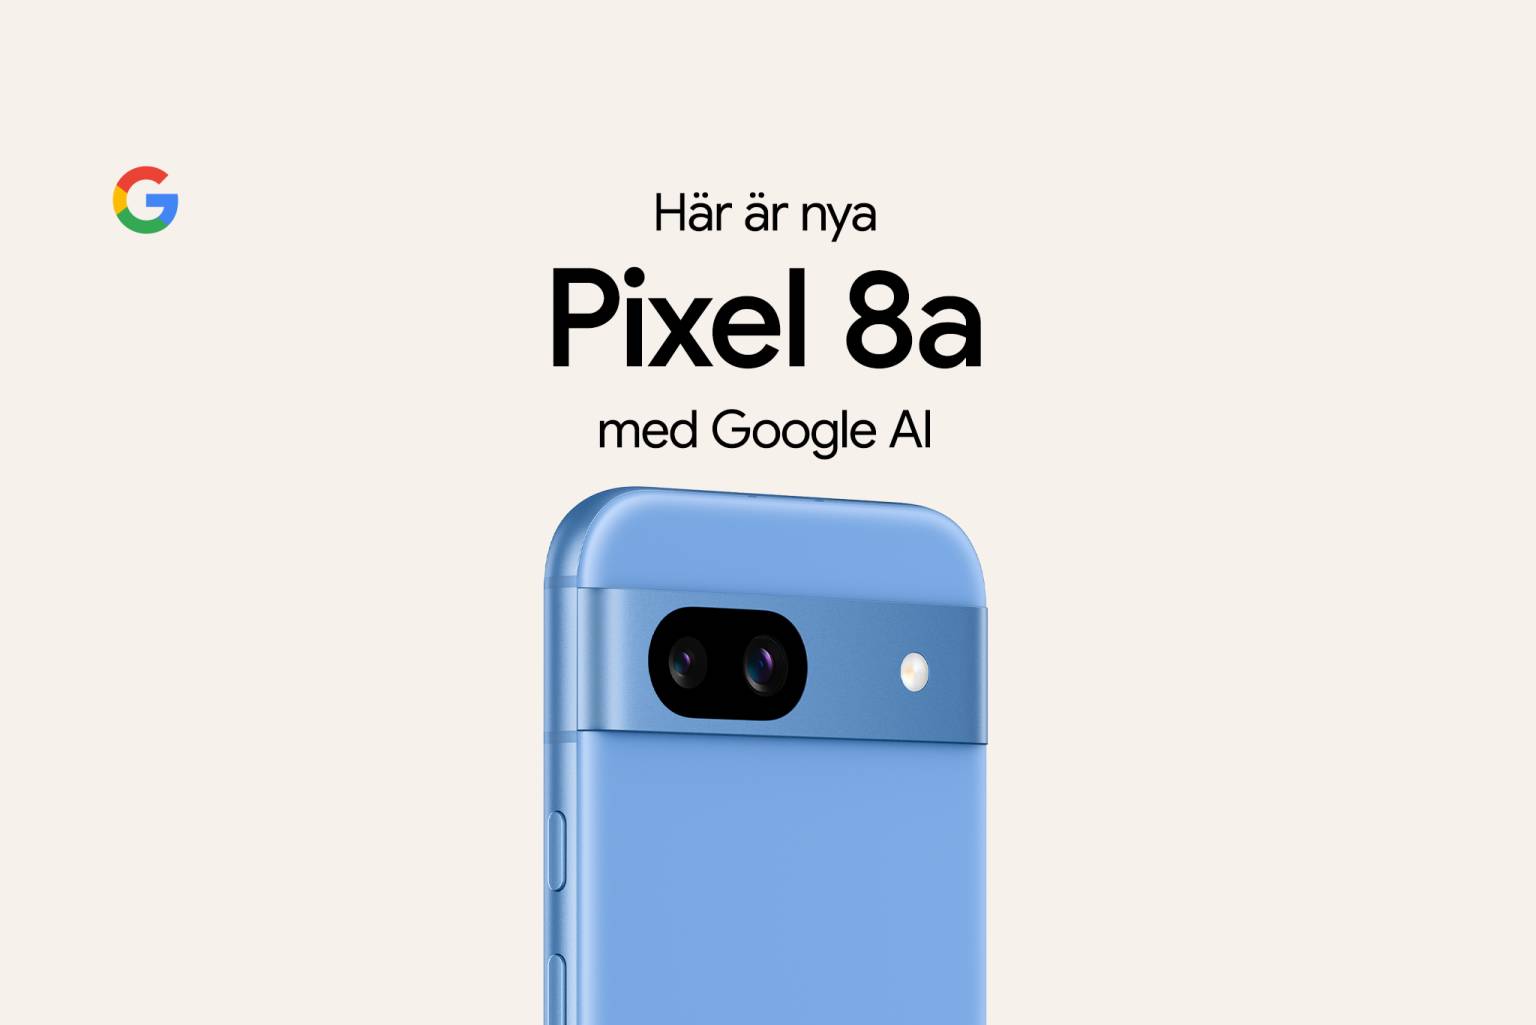 Google Pixel 8a i färgen ljusblå, med texten: "Här är nya Pixel 8a med Google AI" ovanför och en Google-logotyp uppe i vänstra hörnet.